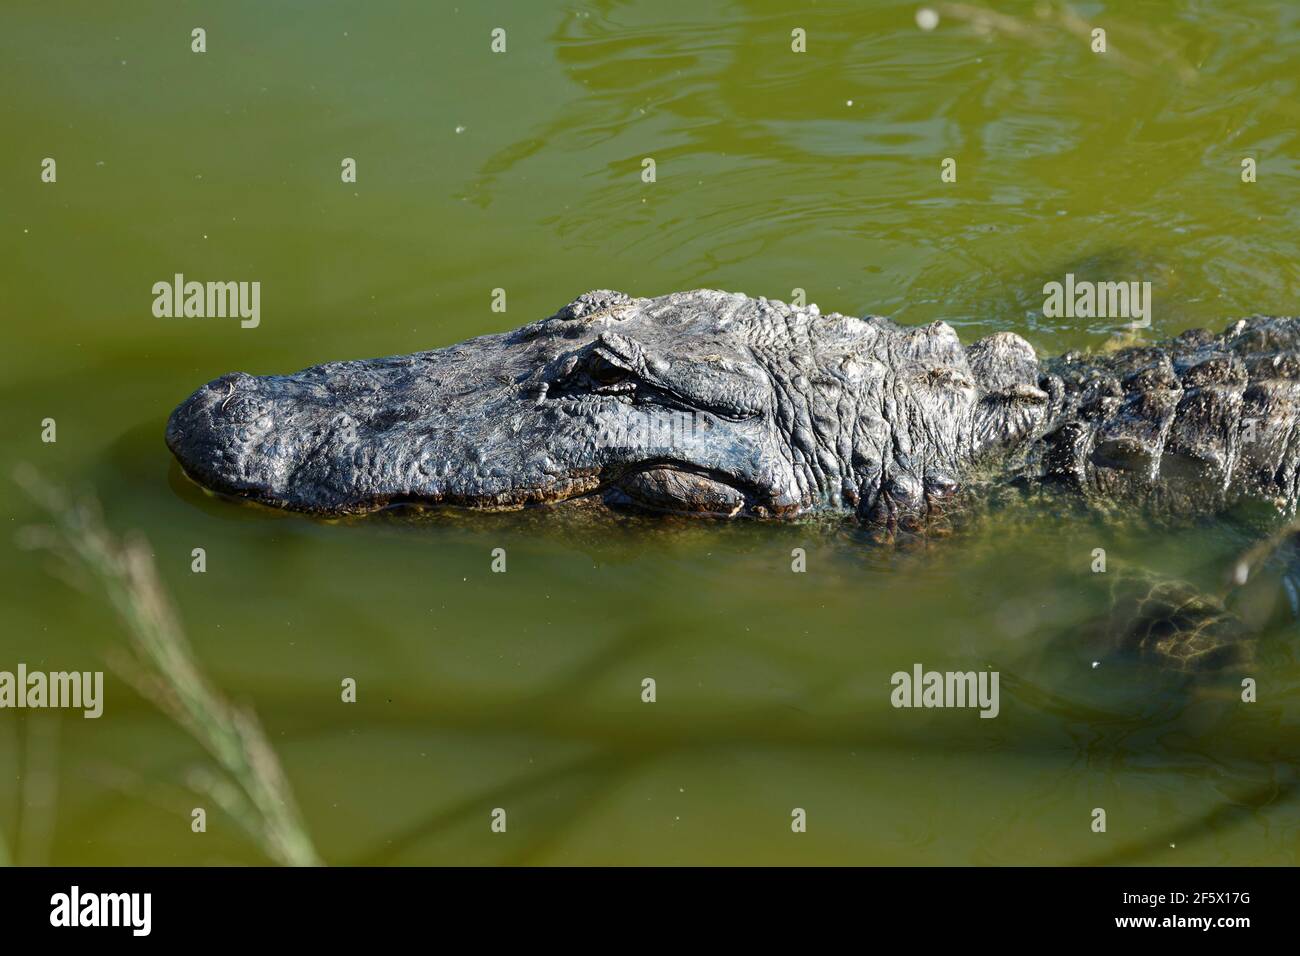 Alligator américain, dans l'eau, à moitié submergé, de près, reptile dangereux, Animal, faune, nature, Alligator mississippiensis, Circle B Bar Reserve, Banque D'Images